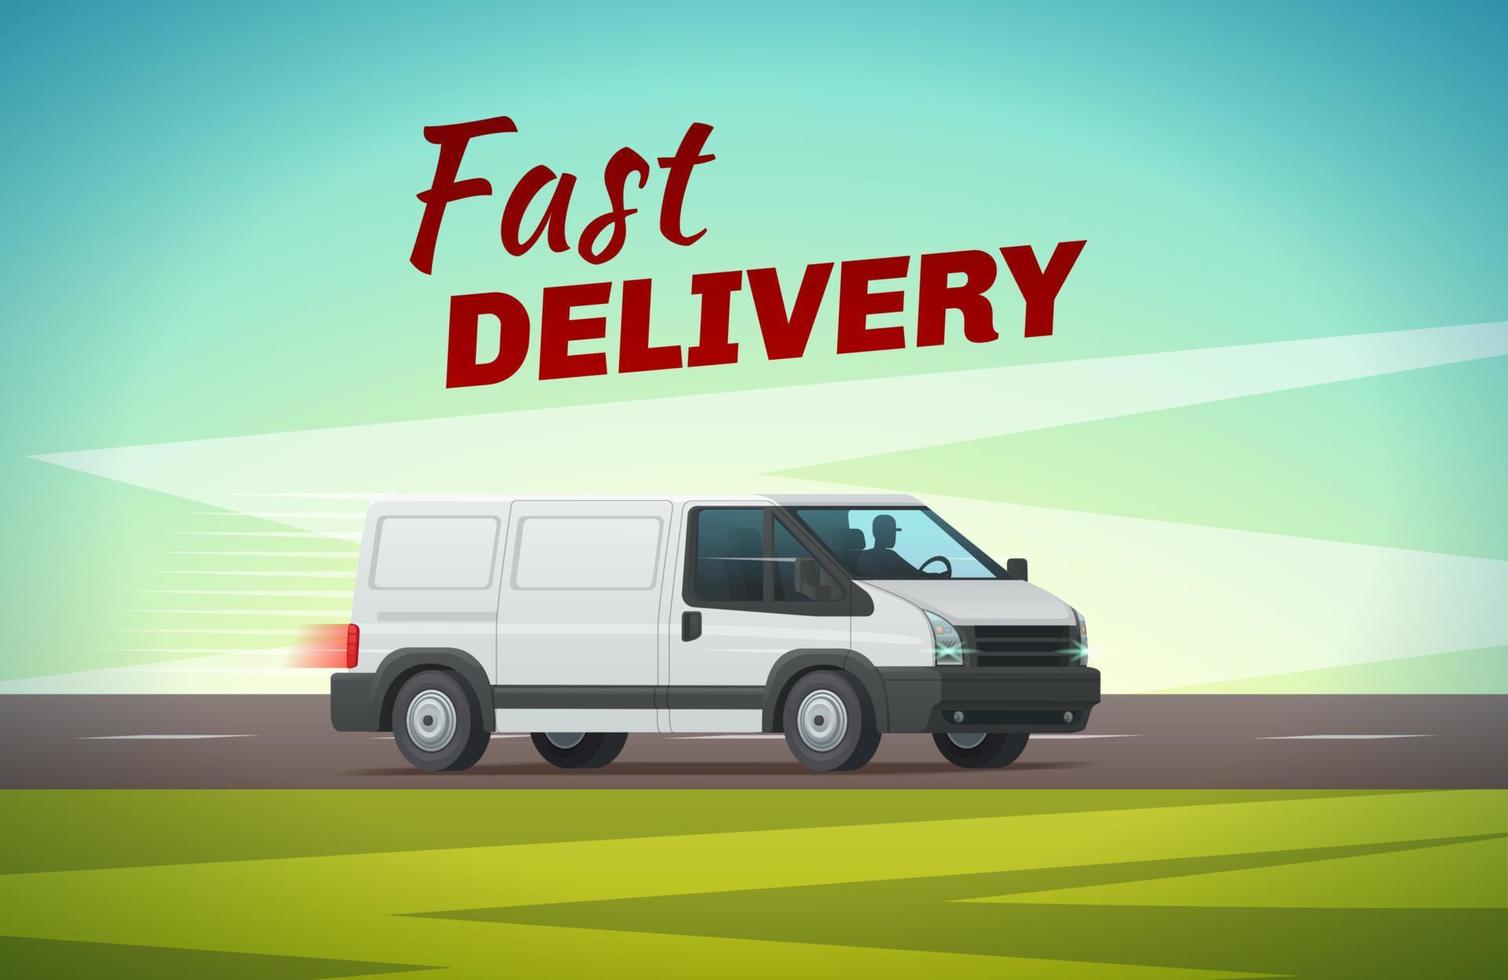 Delivery truck or van for transportation design vector